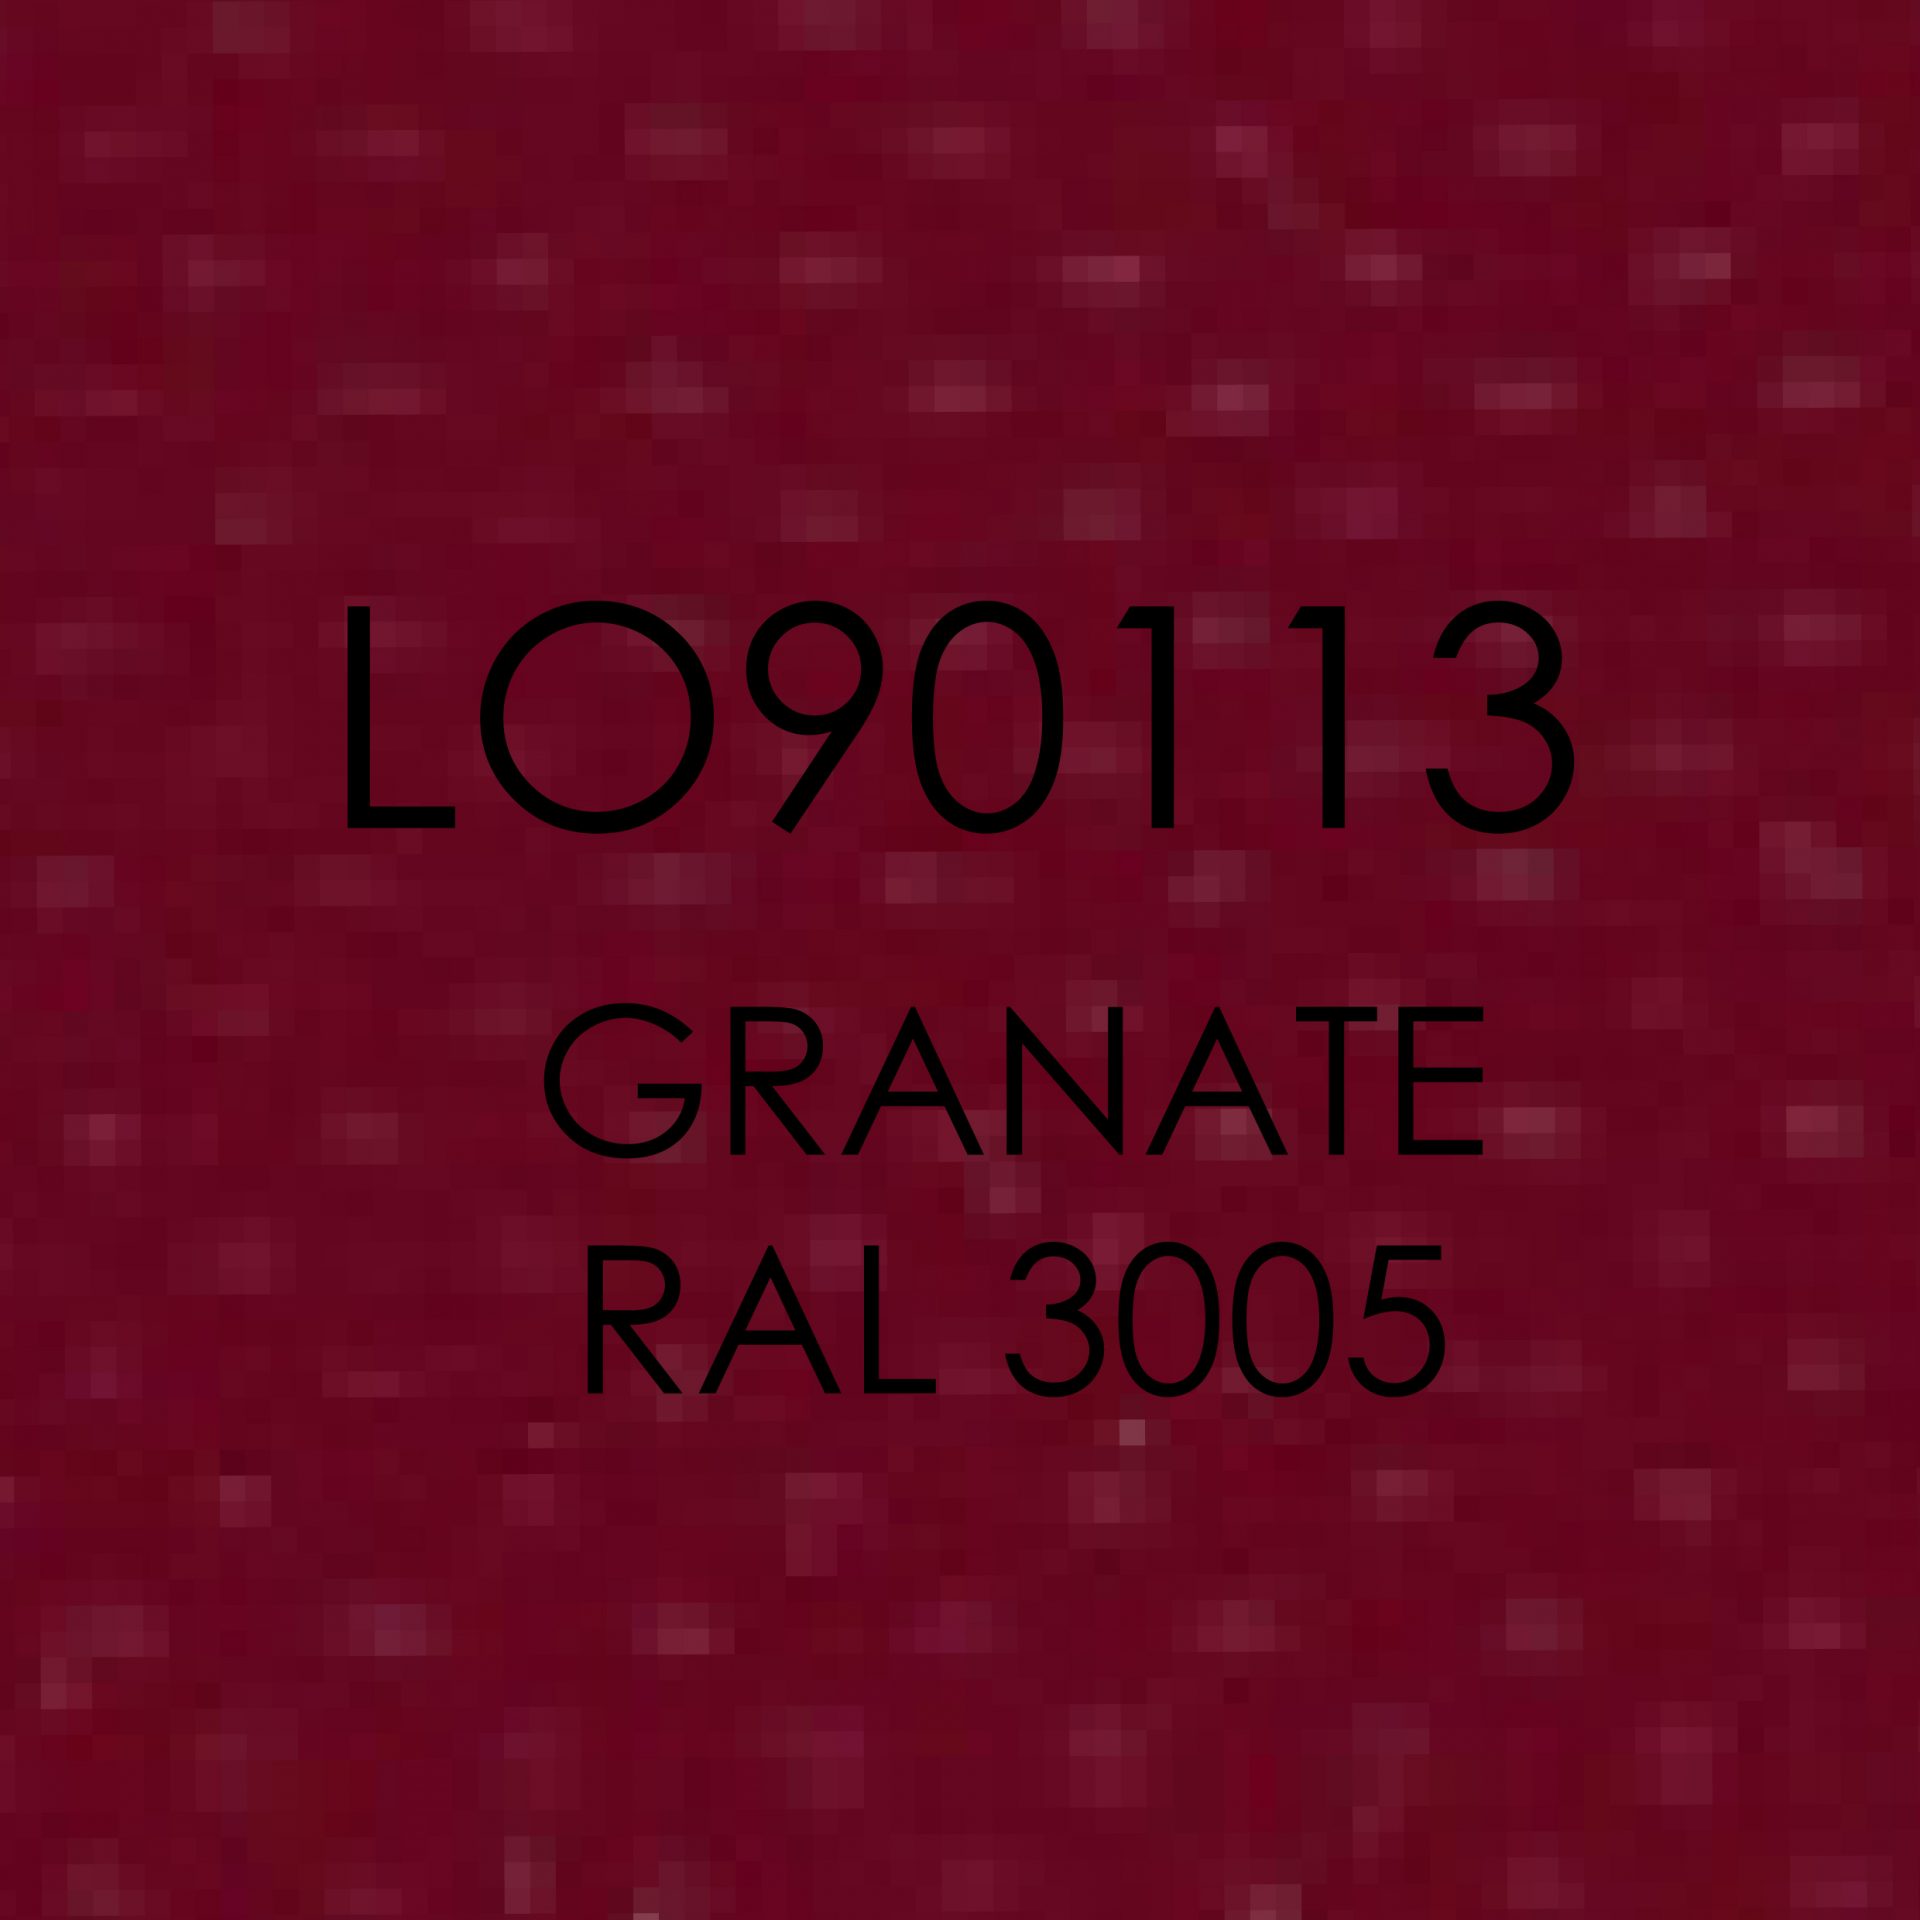 LO90113